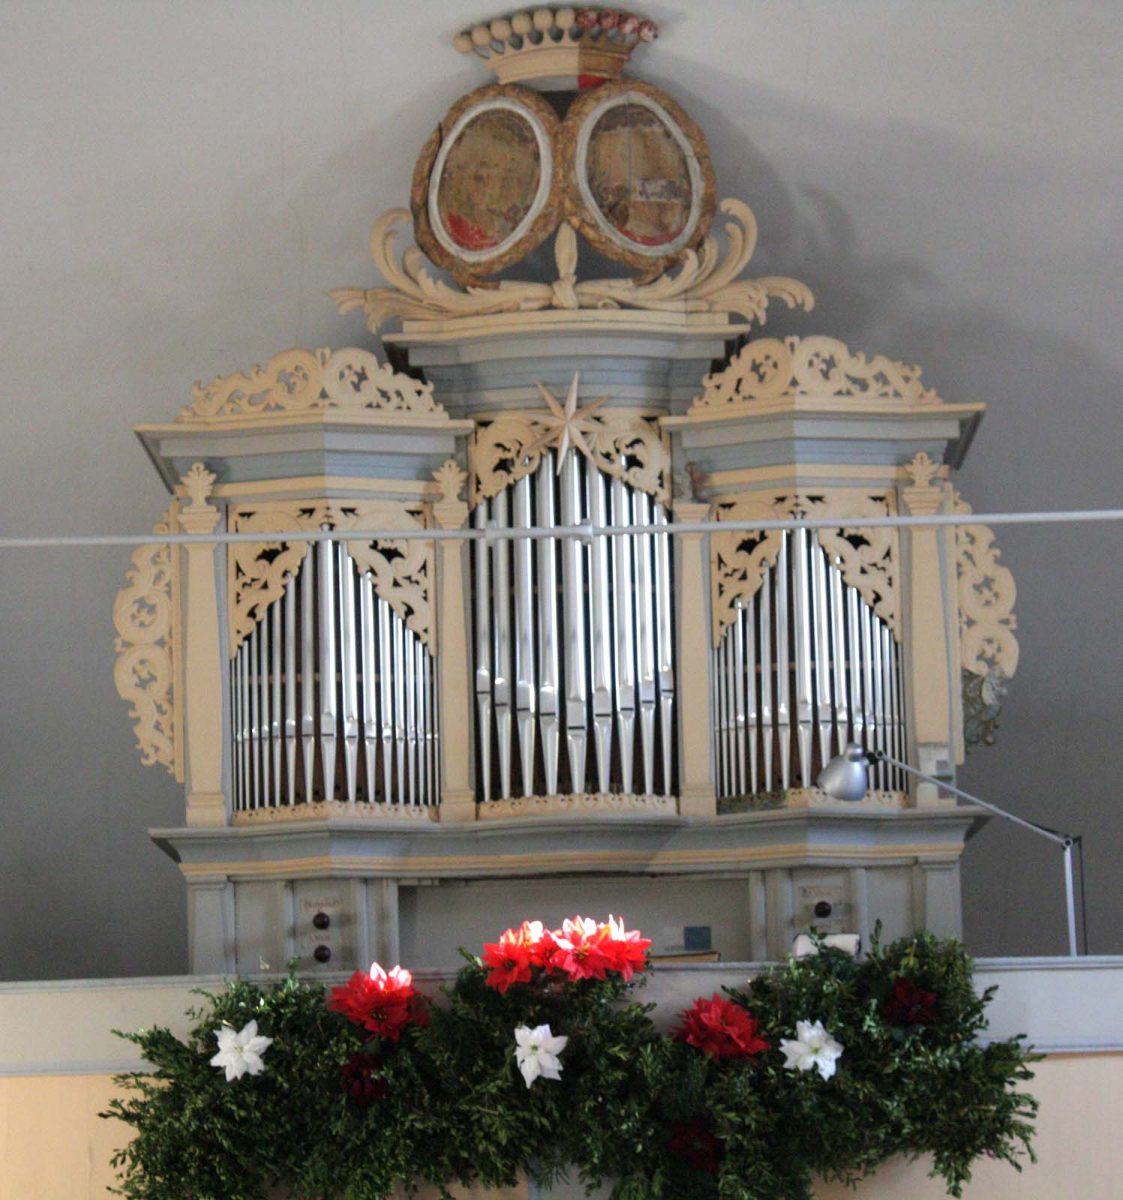 Friderici-Orgel Weißig nach der Restaurierung mit Erntedankschmuck